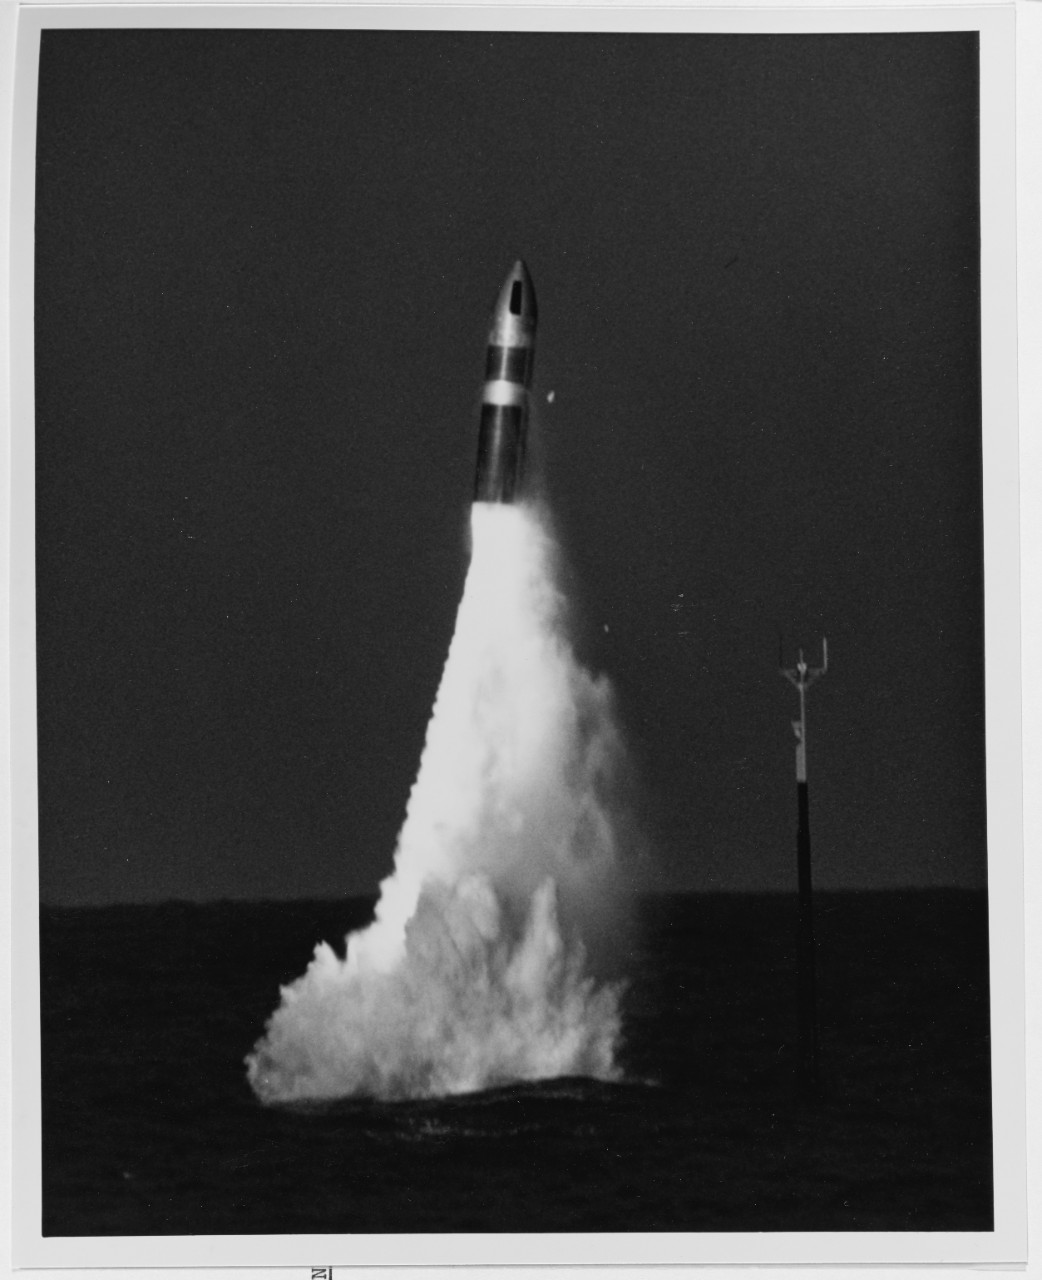 ZUGM-73A "Poseidon" Missile